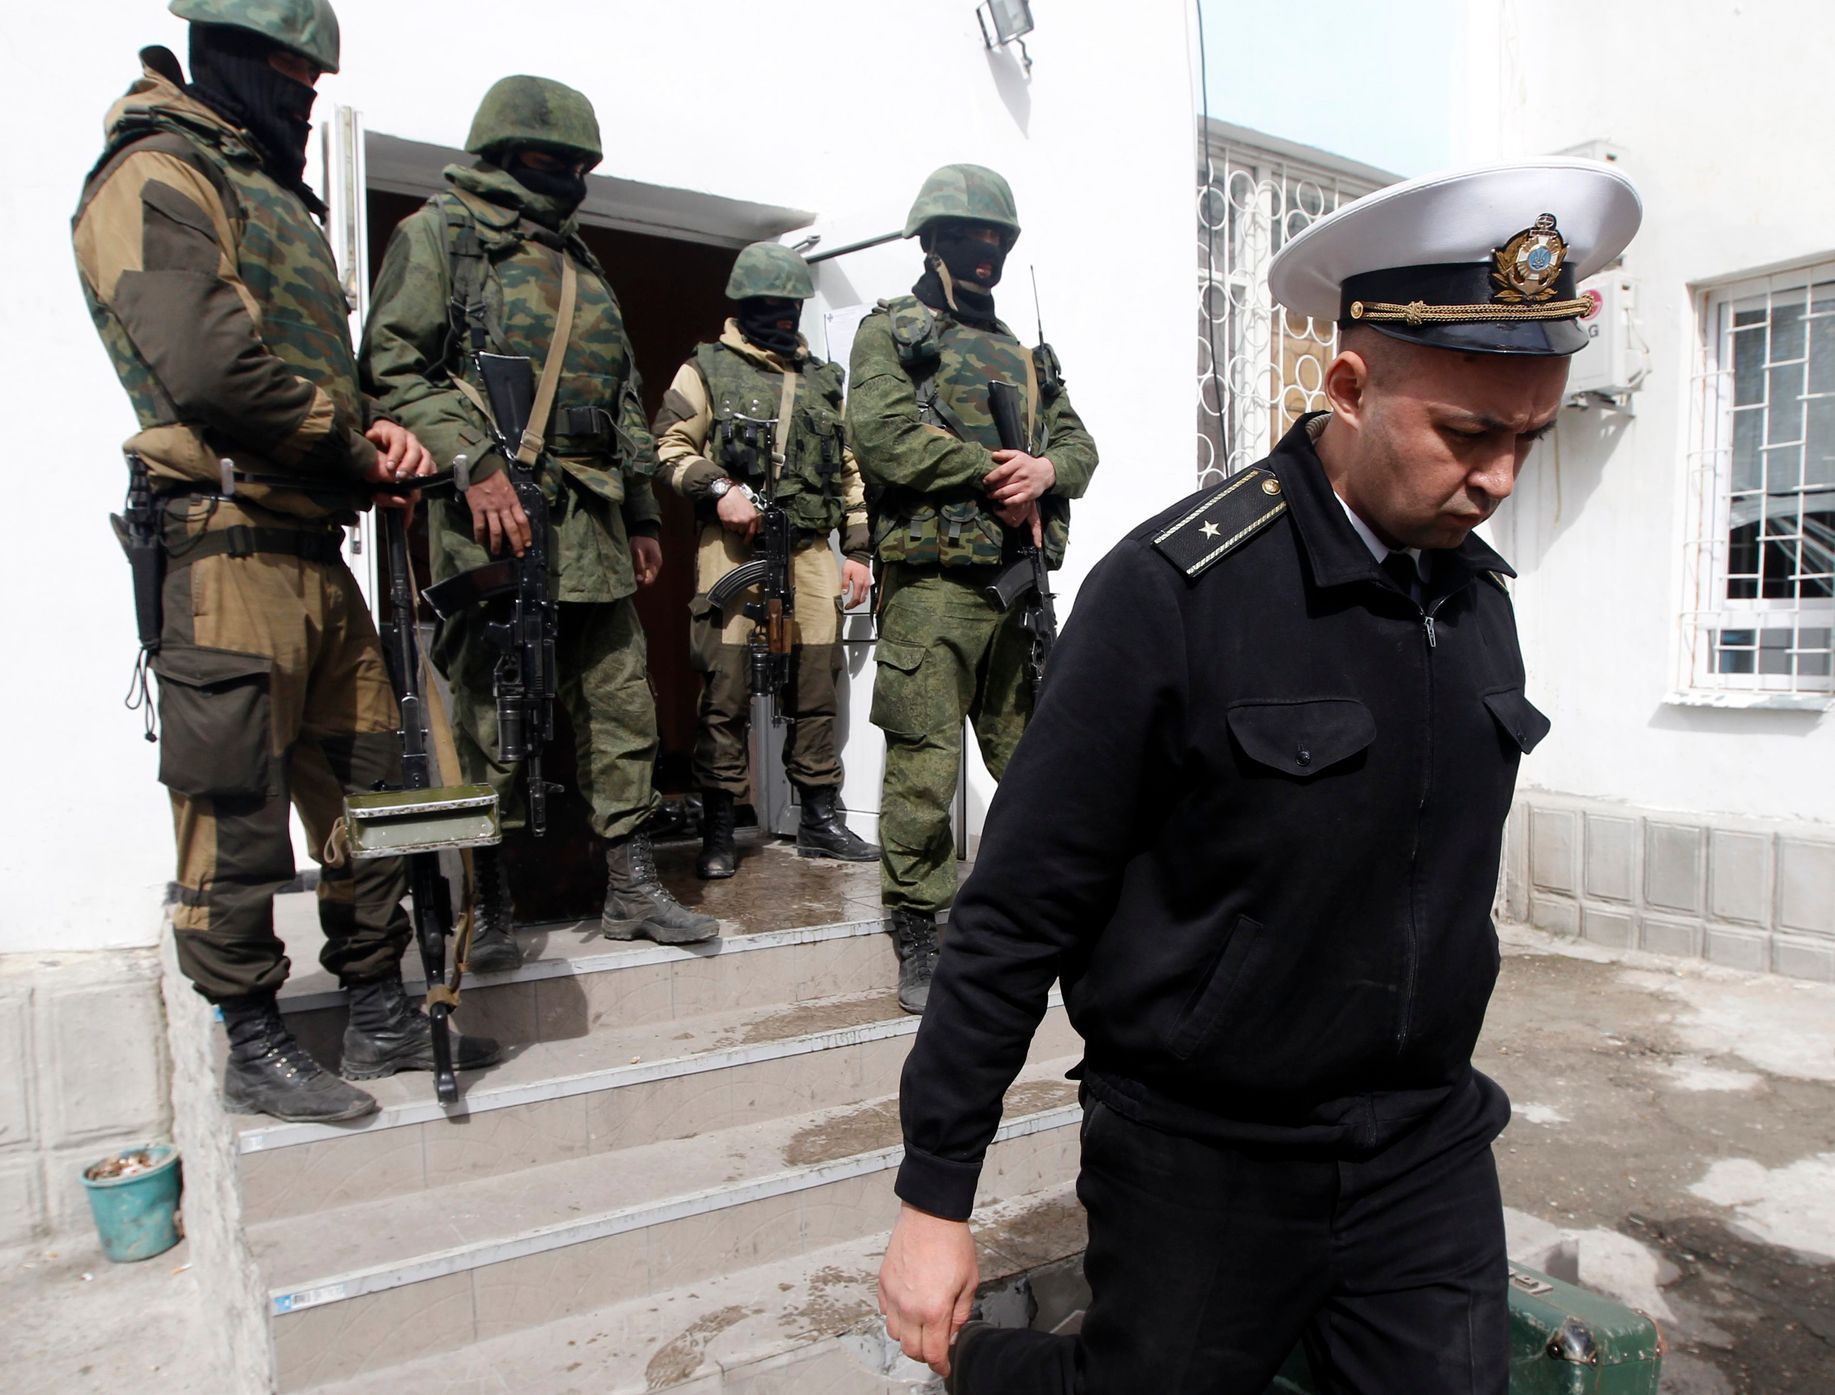 Ukrajinský námořní důstojník opouští obsazenou základnu v Sevastopolu